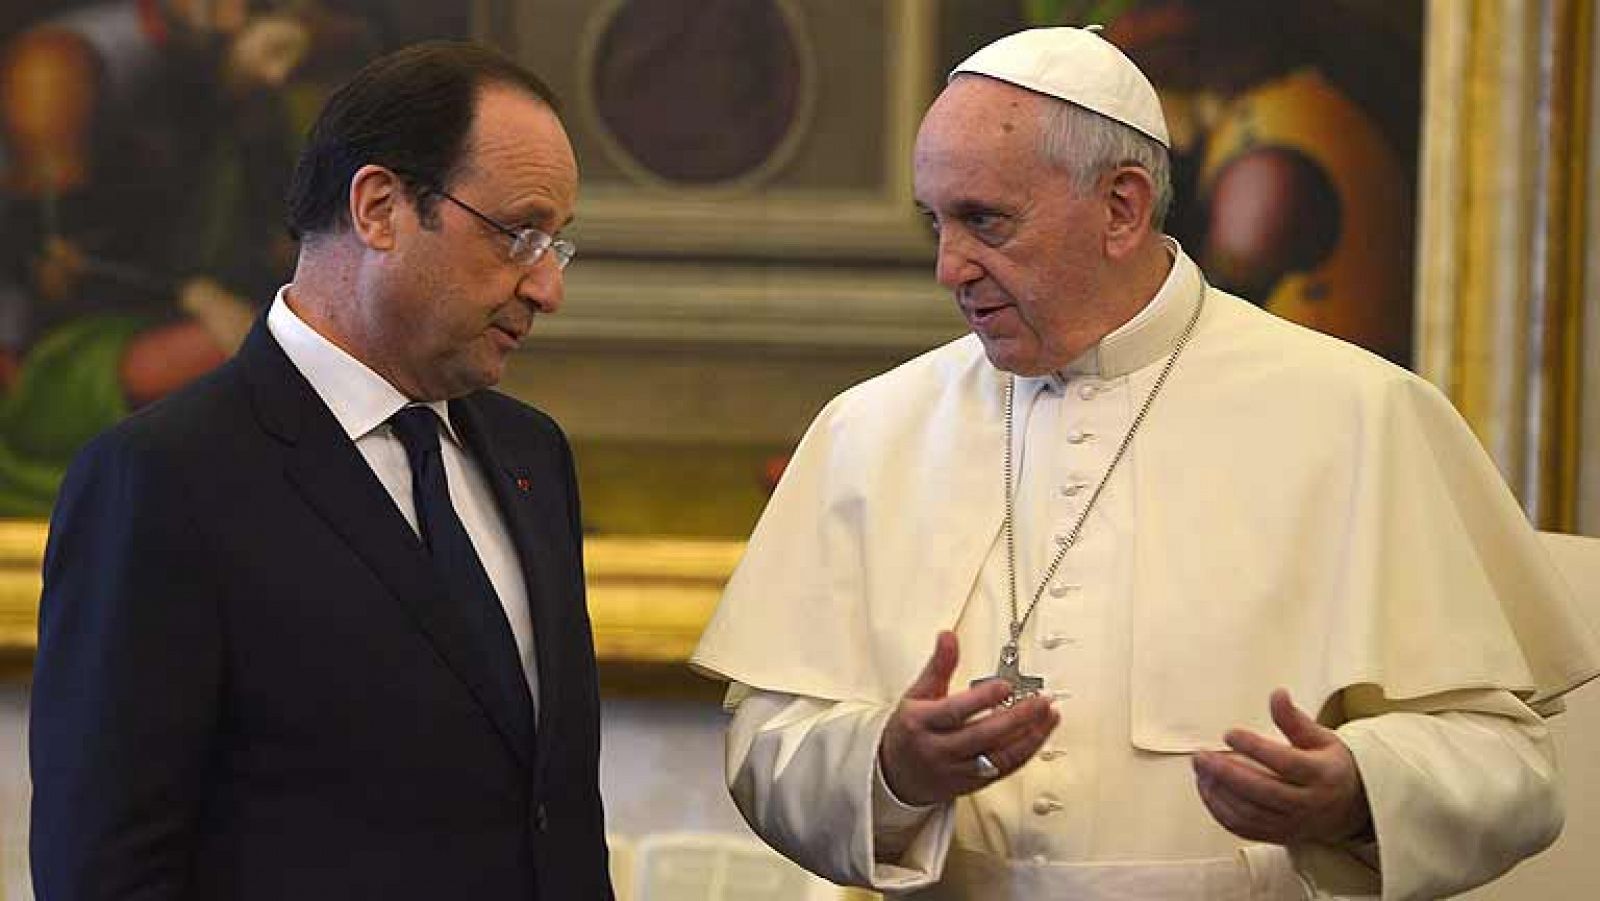  Hollande visita por primera vez al papa Francisco